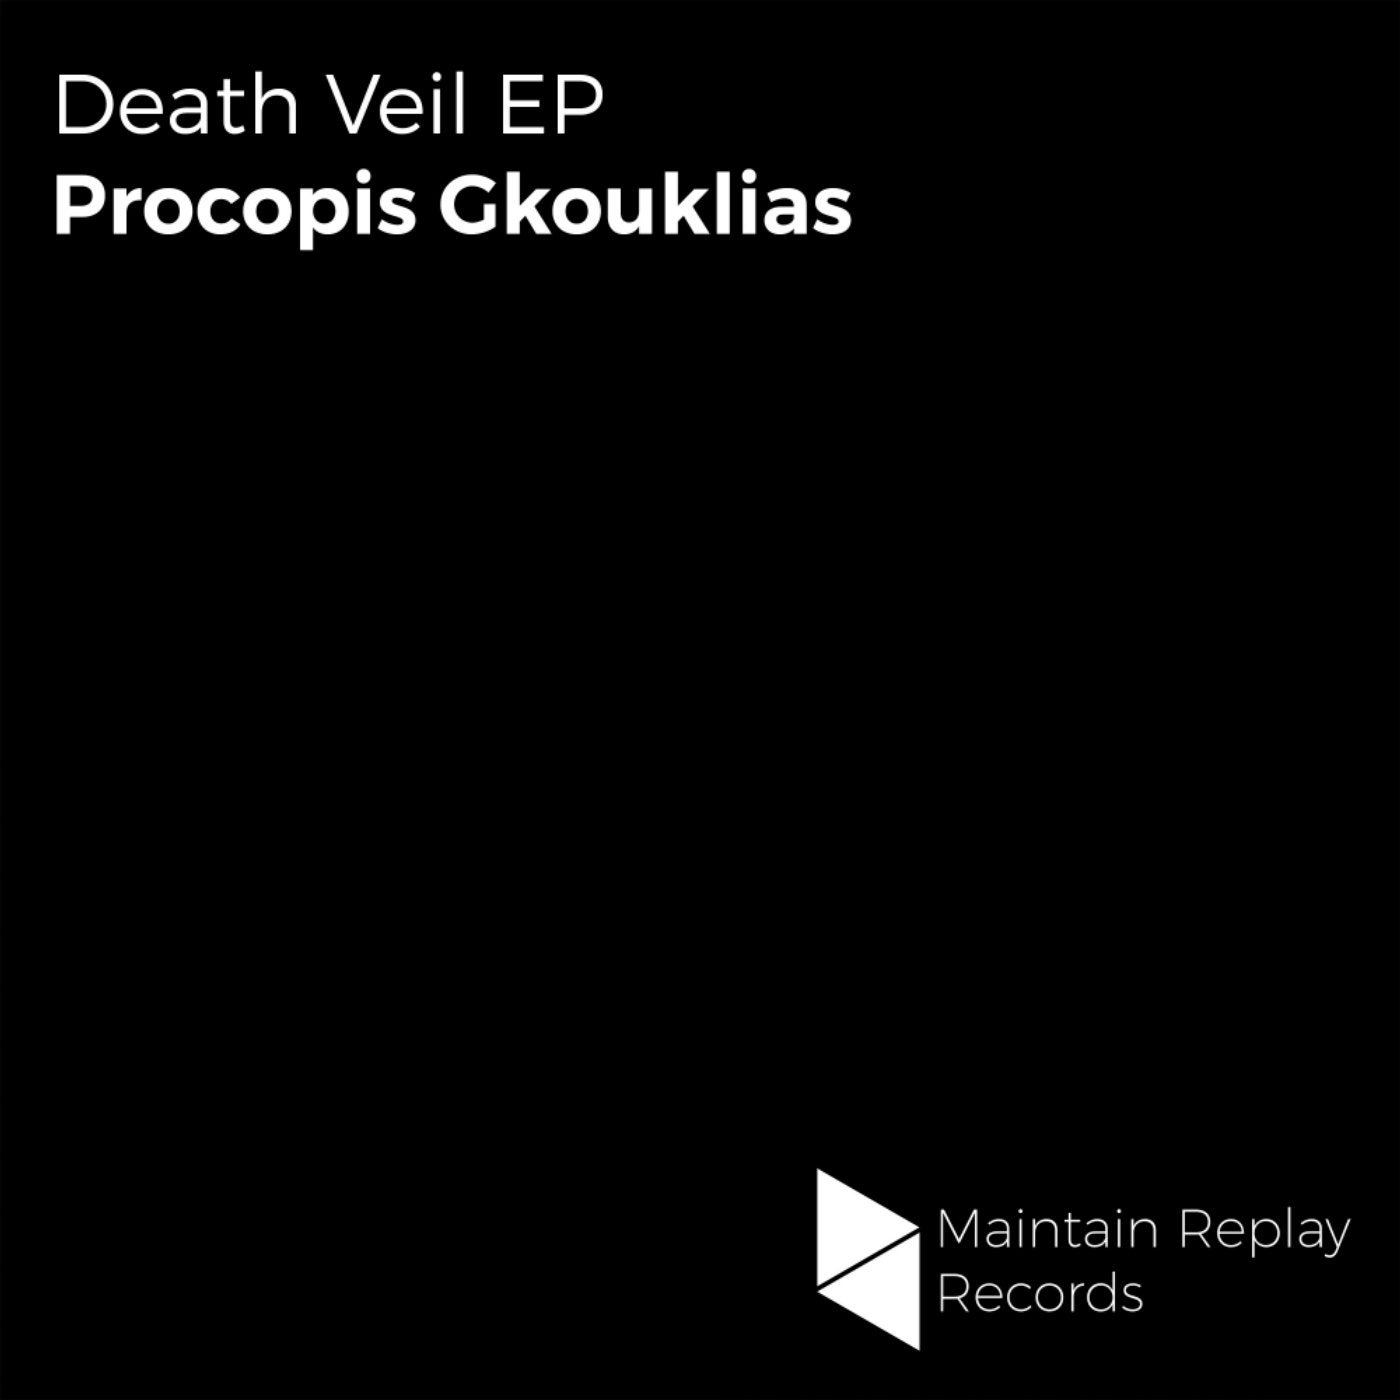 Death Veil EP